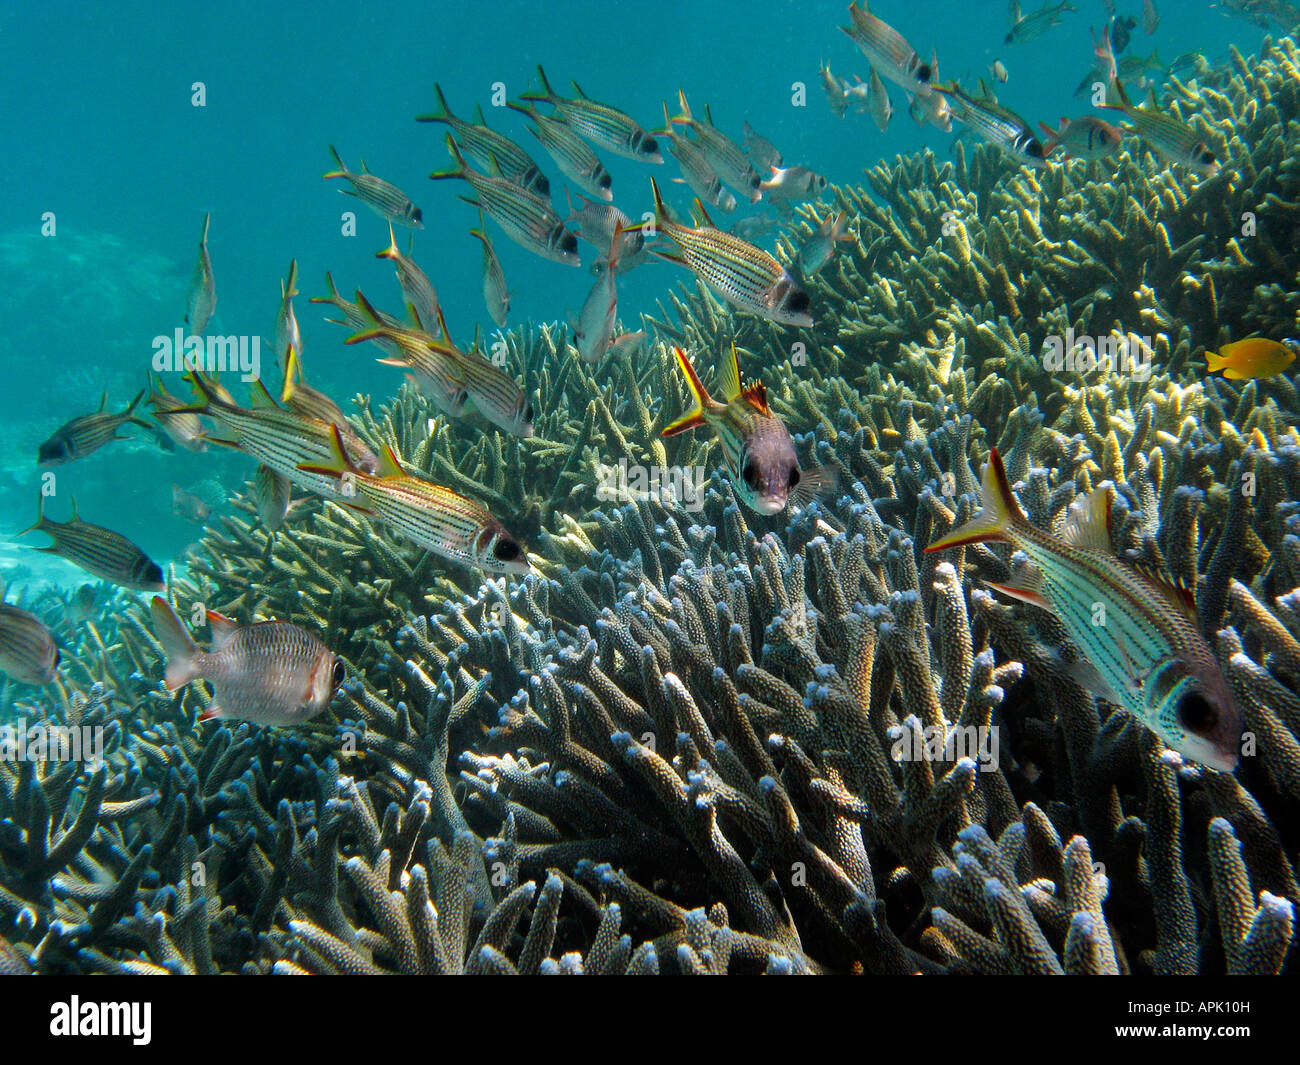 L'École de méné bleu Marignans Neoniphon sammara et Staghorn Coral Reef Agincourt Grande Barrière de corail du nord du Queensland en Australie Banque D'Images